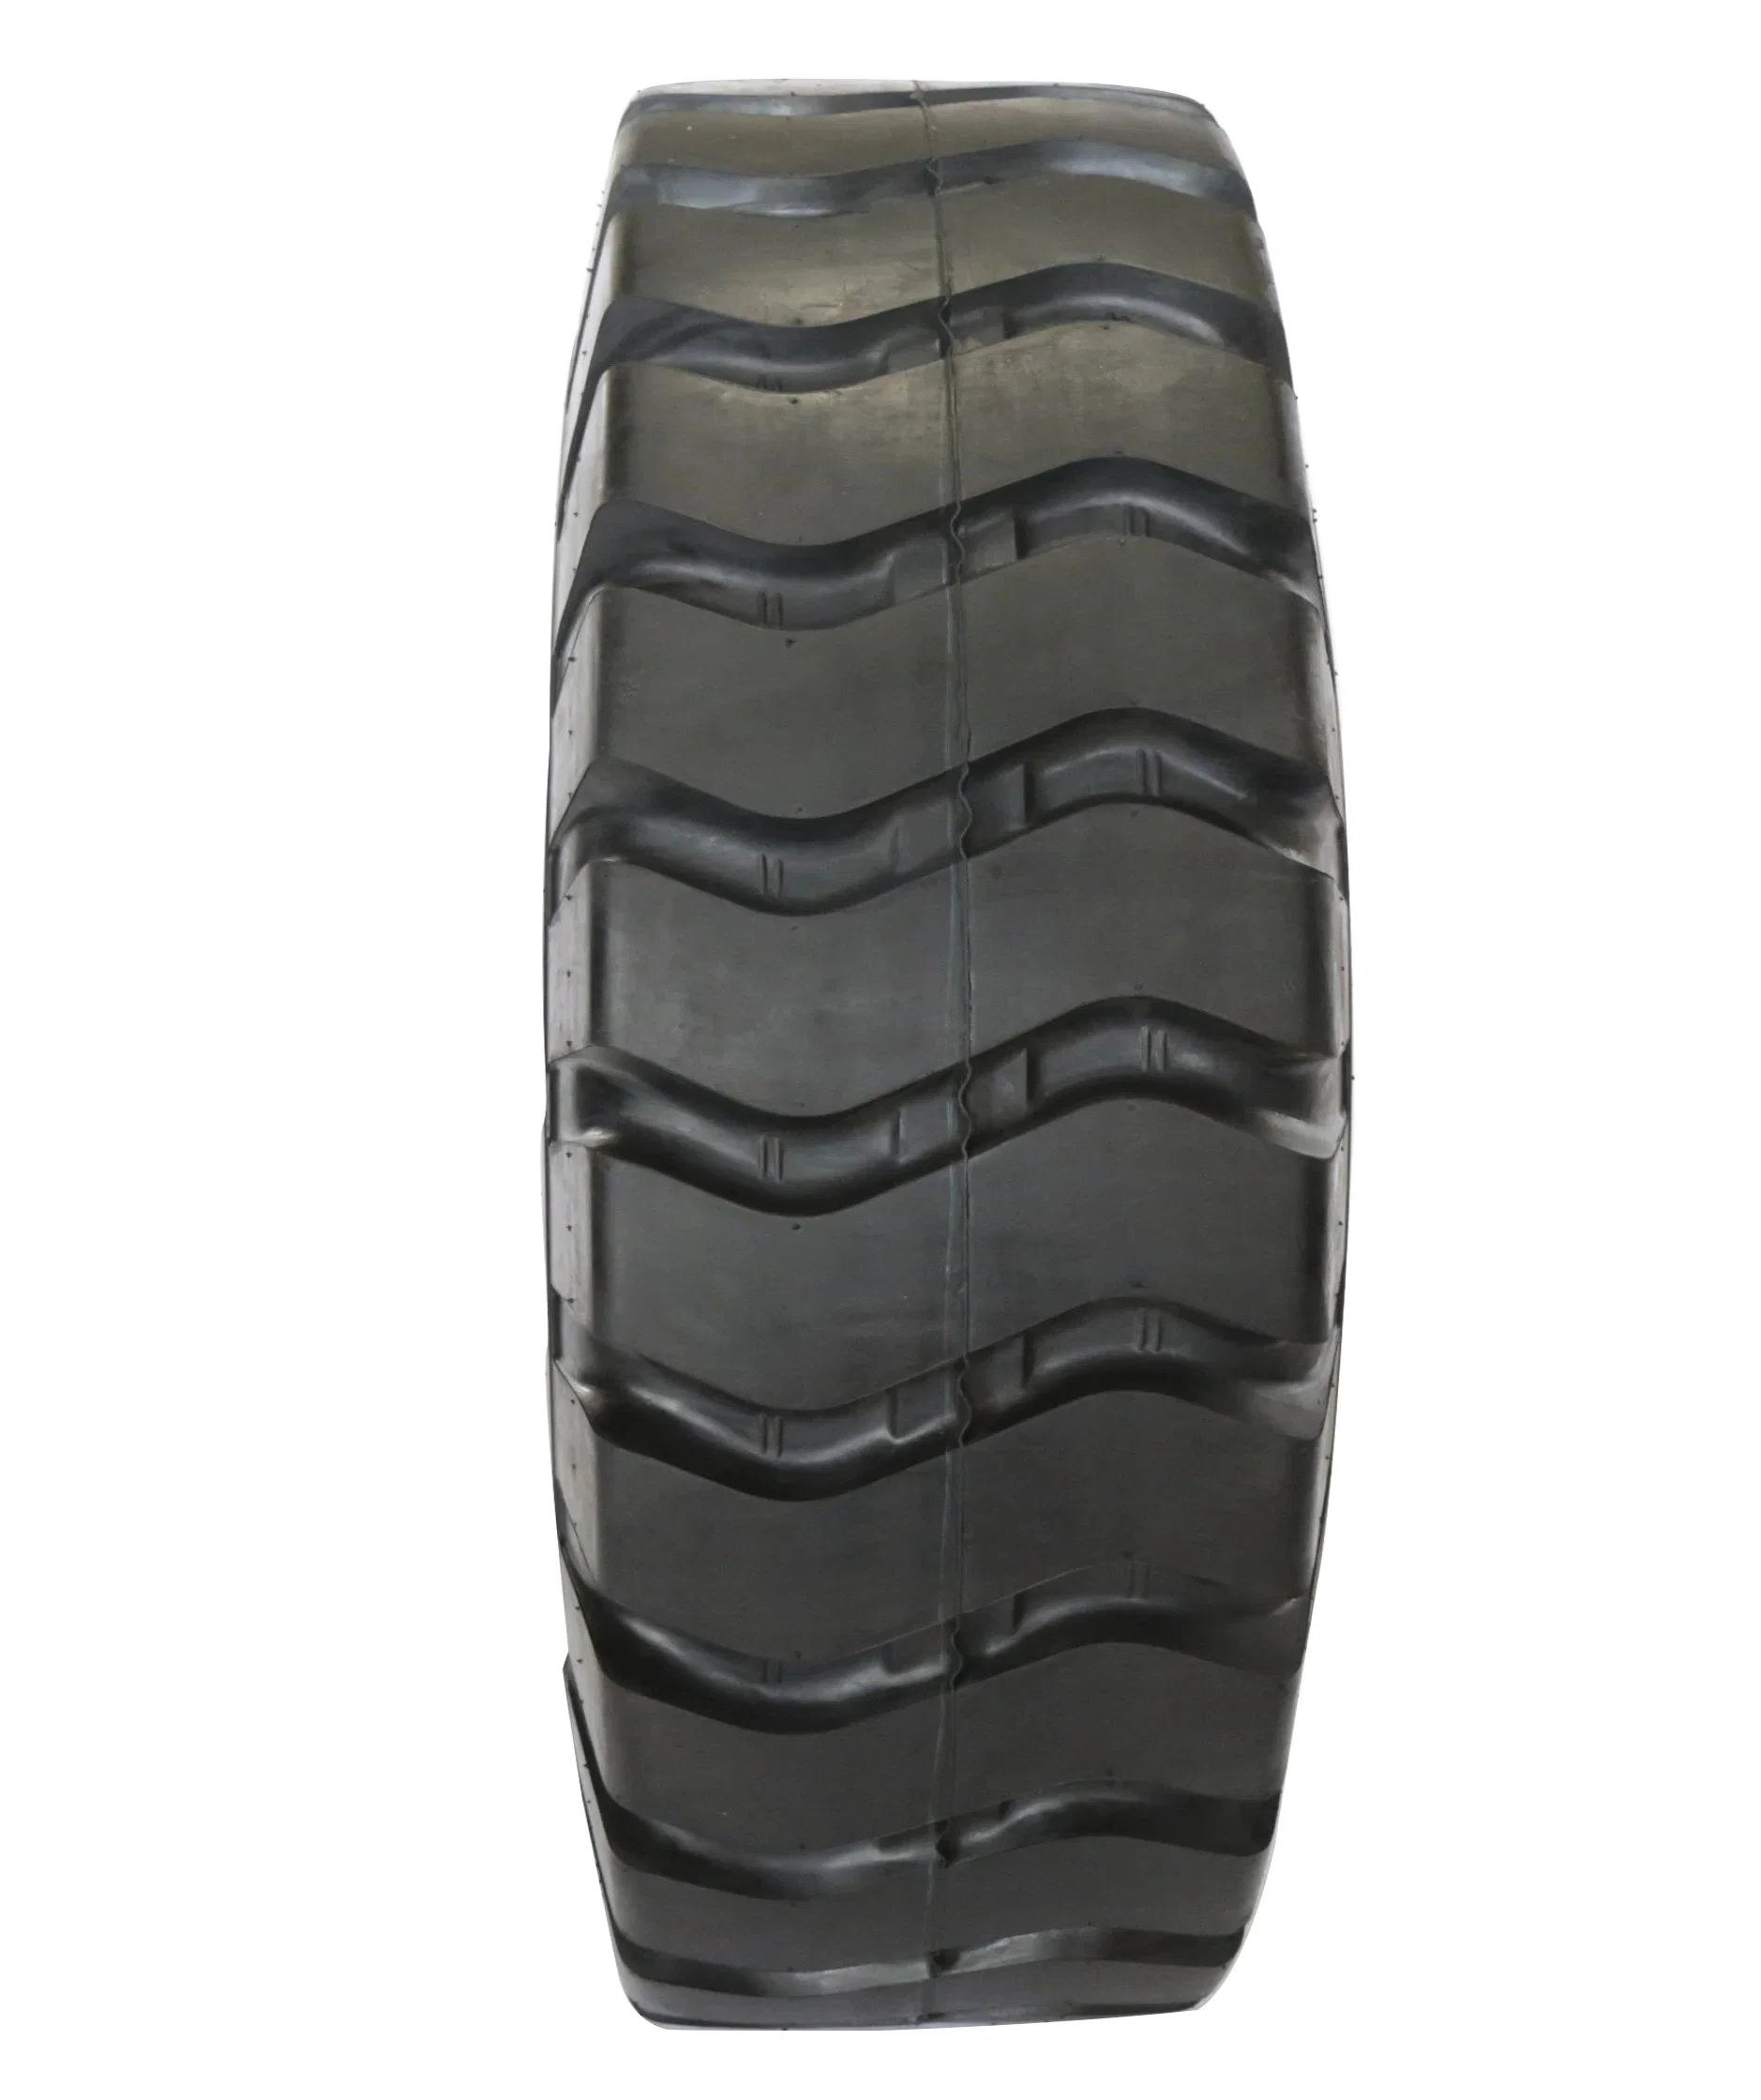 Factory Surmount Tyre L3/ E3 OTR Tire for Loader Dumper Mining Construction 20.5-25 23.5-25 16/70-24 1300-25 1400-24 1600-25